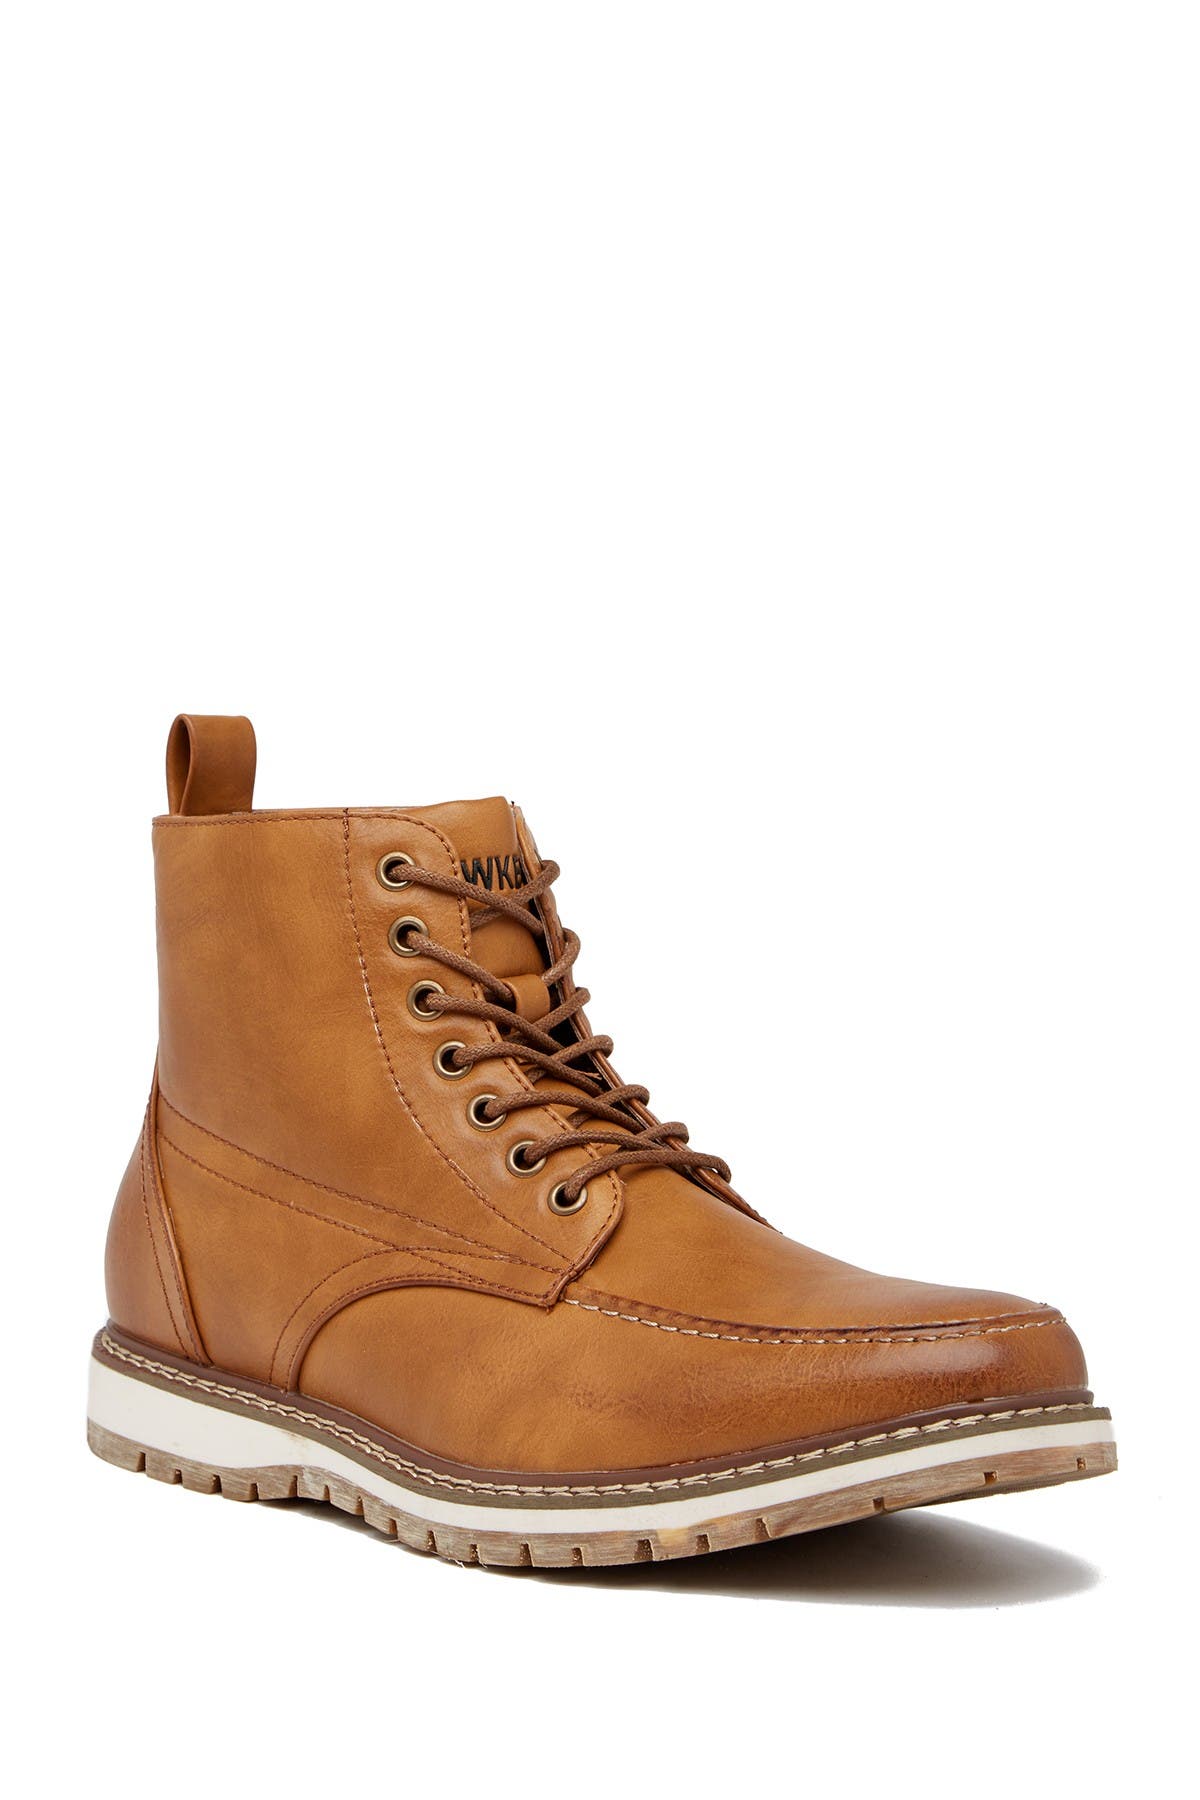 high sierra men's boots